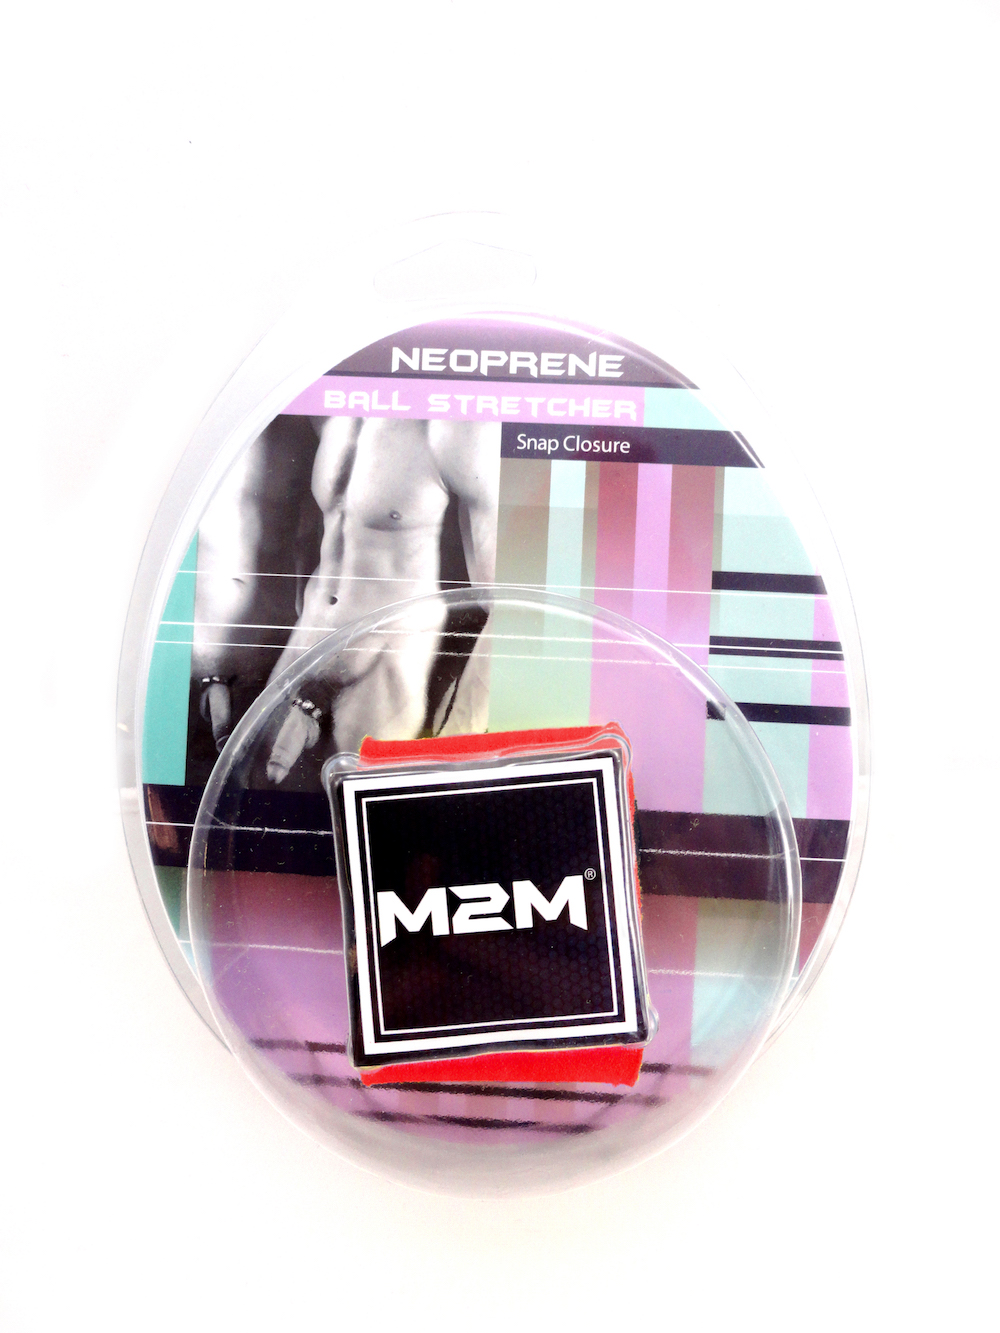 M2M NEOPRENE BALL STRETCHER 1 INCH - RED